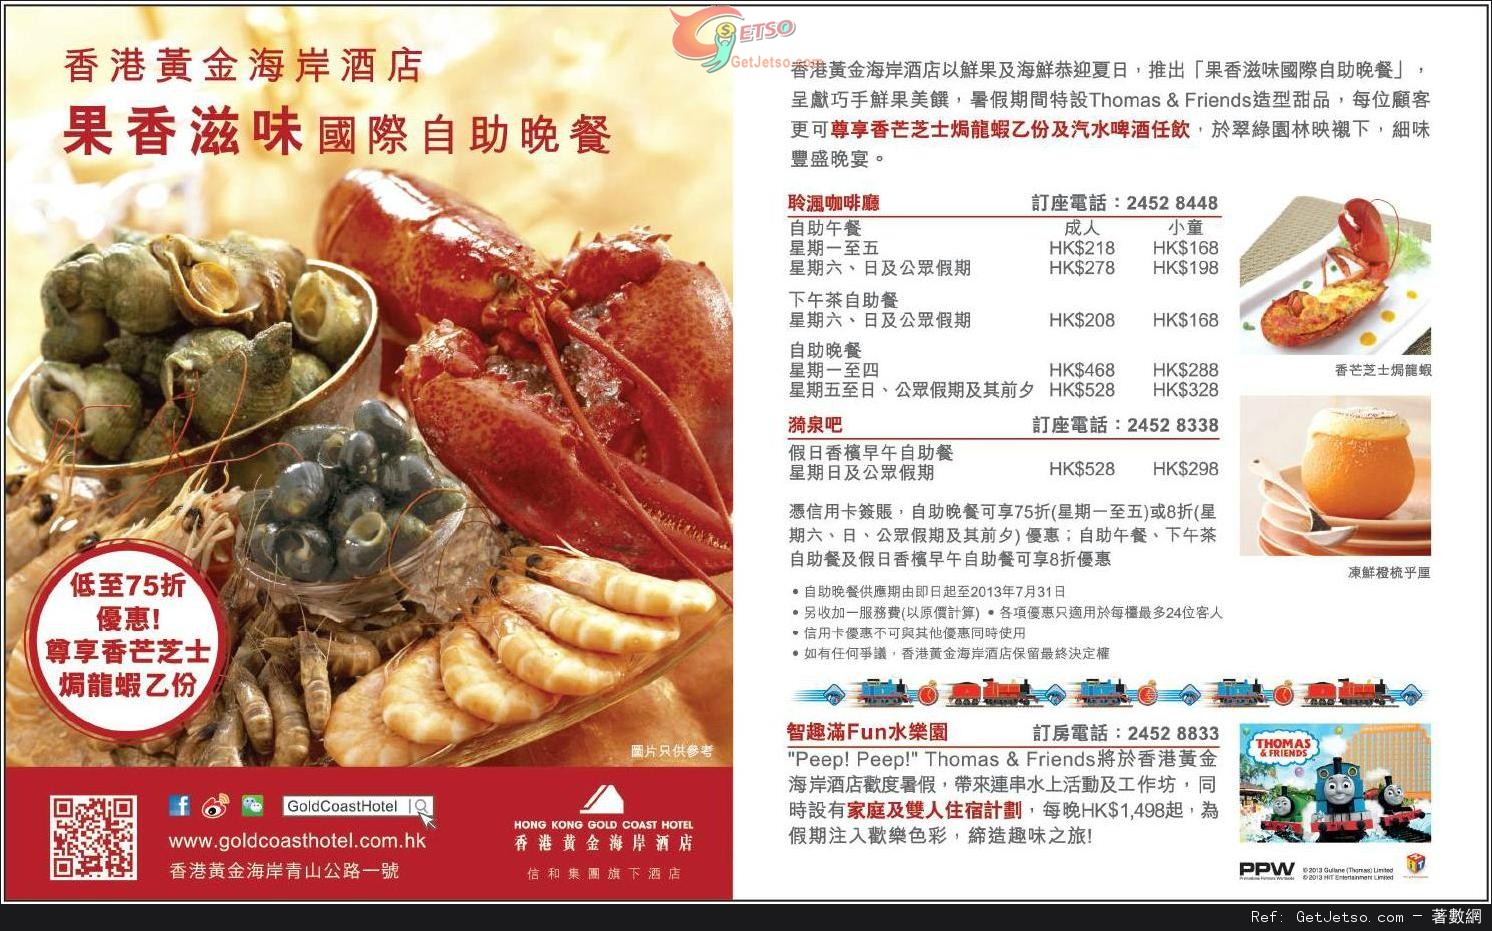 信用卡享香港黃金海岸酒店果香滋味國際自助晚餐低至75折優惠(至13年7月31日)圖片1